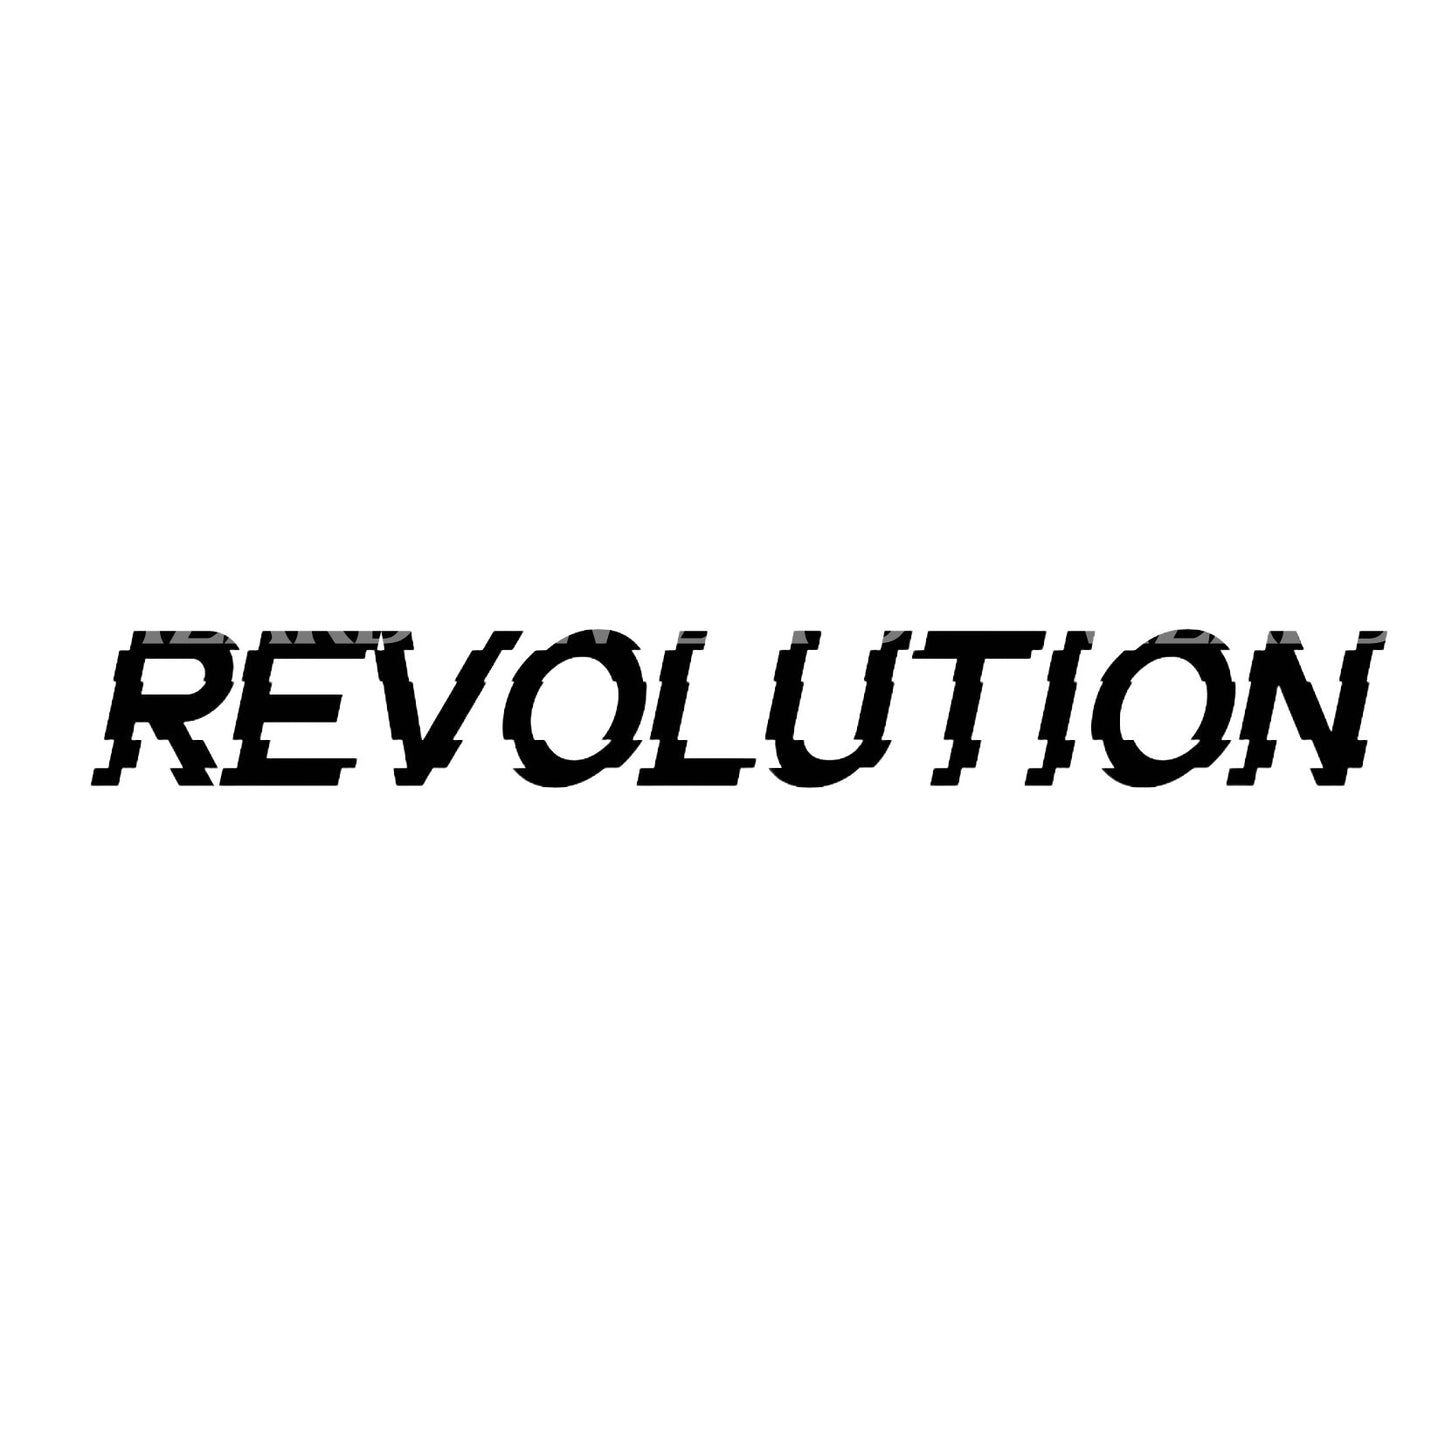 Conception de tatouage Glitch inspirée de Revolution Matrix